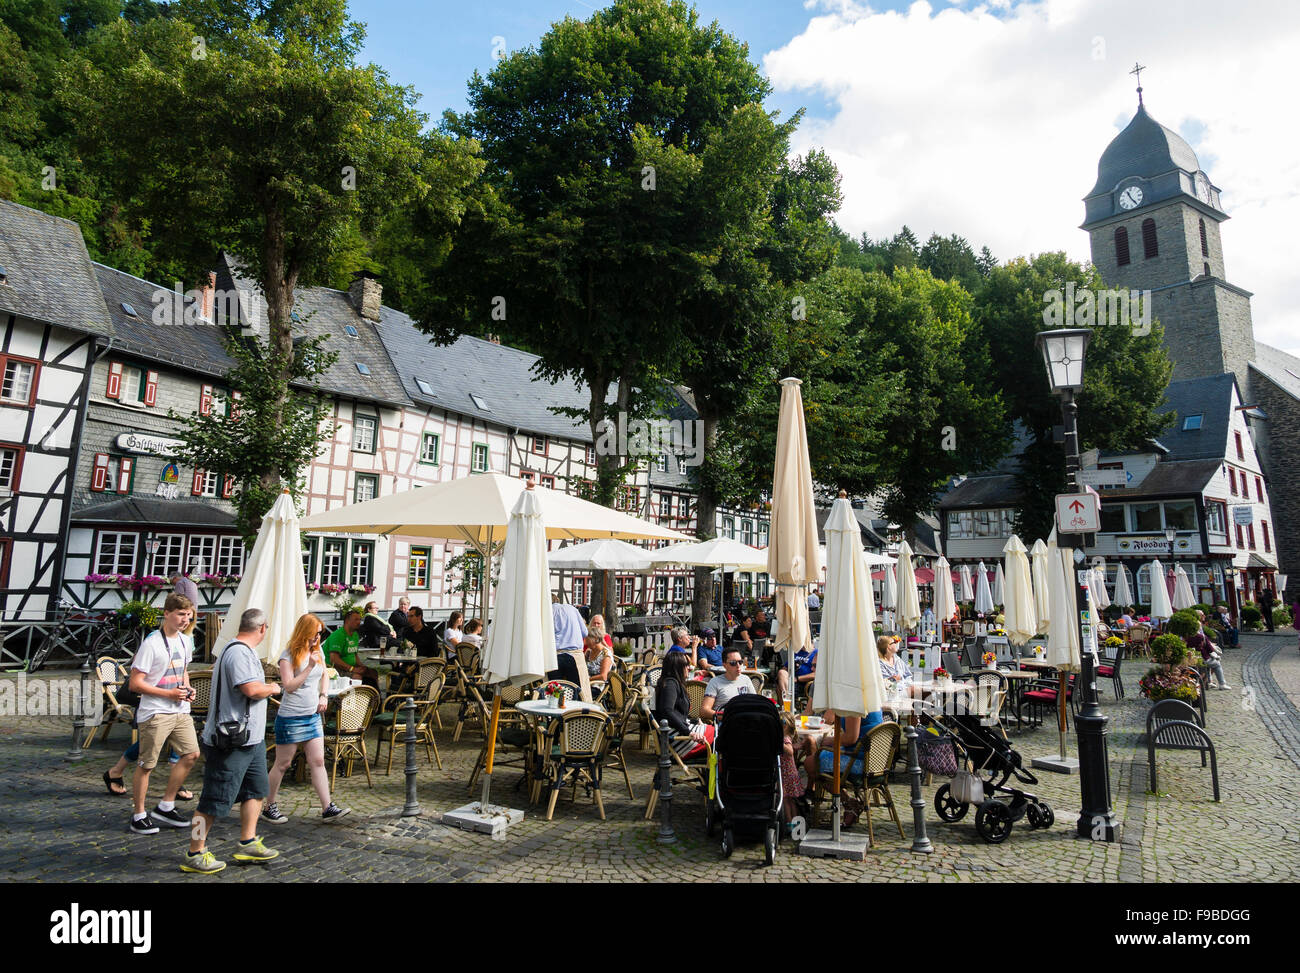 Touristen besuchen Straßencafés auf dem Marktplatz in der Stadt Monschau / Eifel-Region / Deutschland. Stockfoto